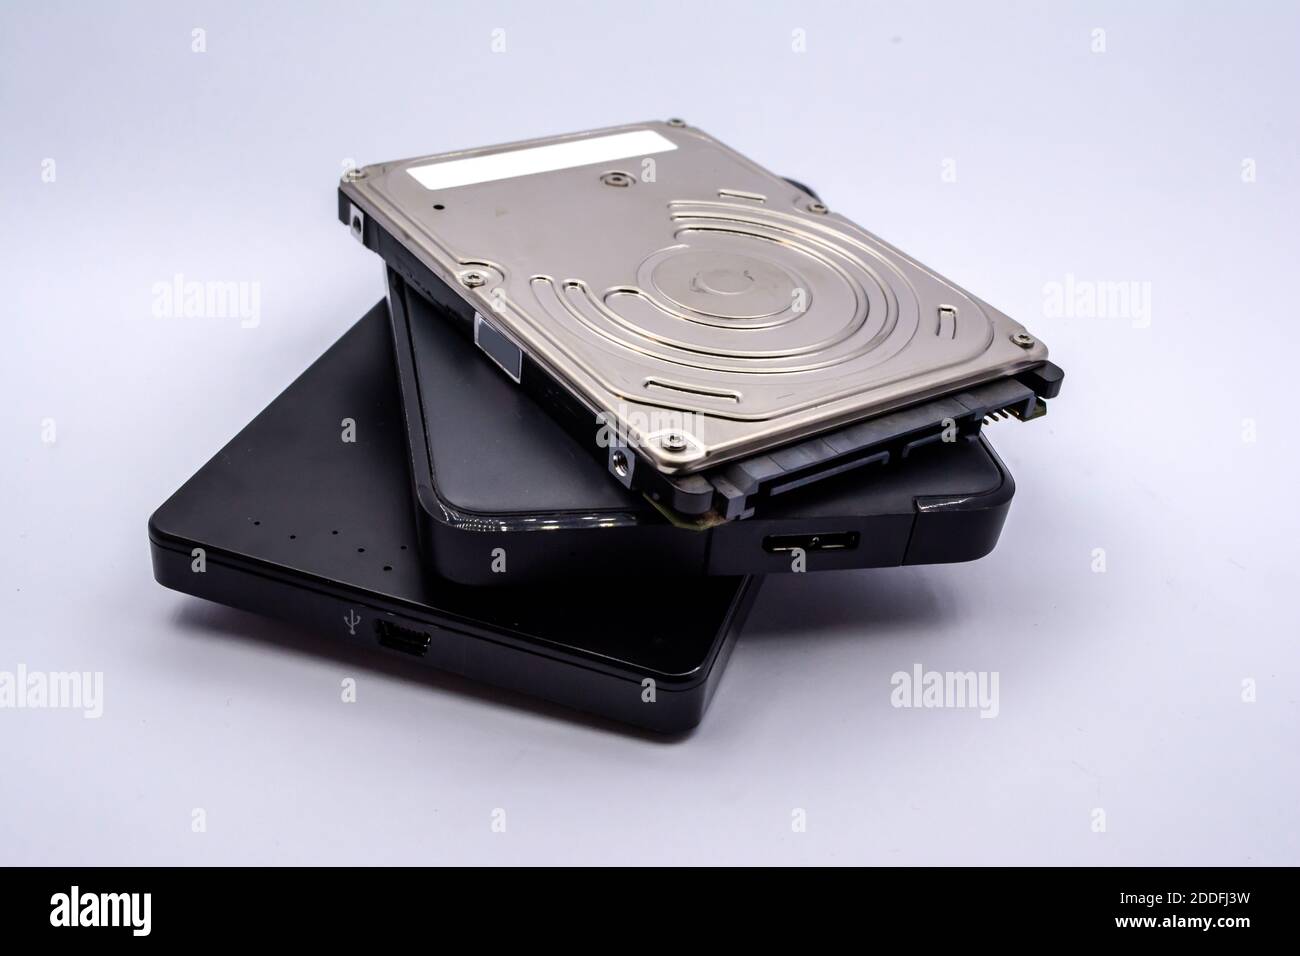 HDD - pila di unità disco rigido esterne e interne per notebook isolate su sfondo bianco. Pila di unità disco rigido per notebook. Foto Stock